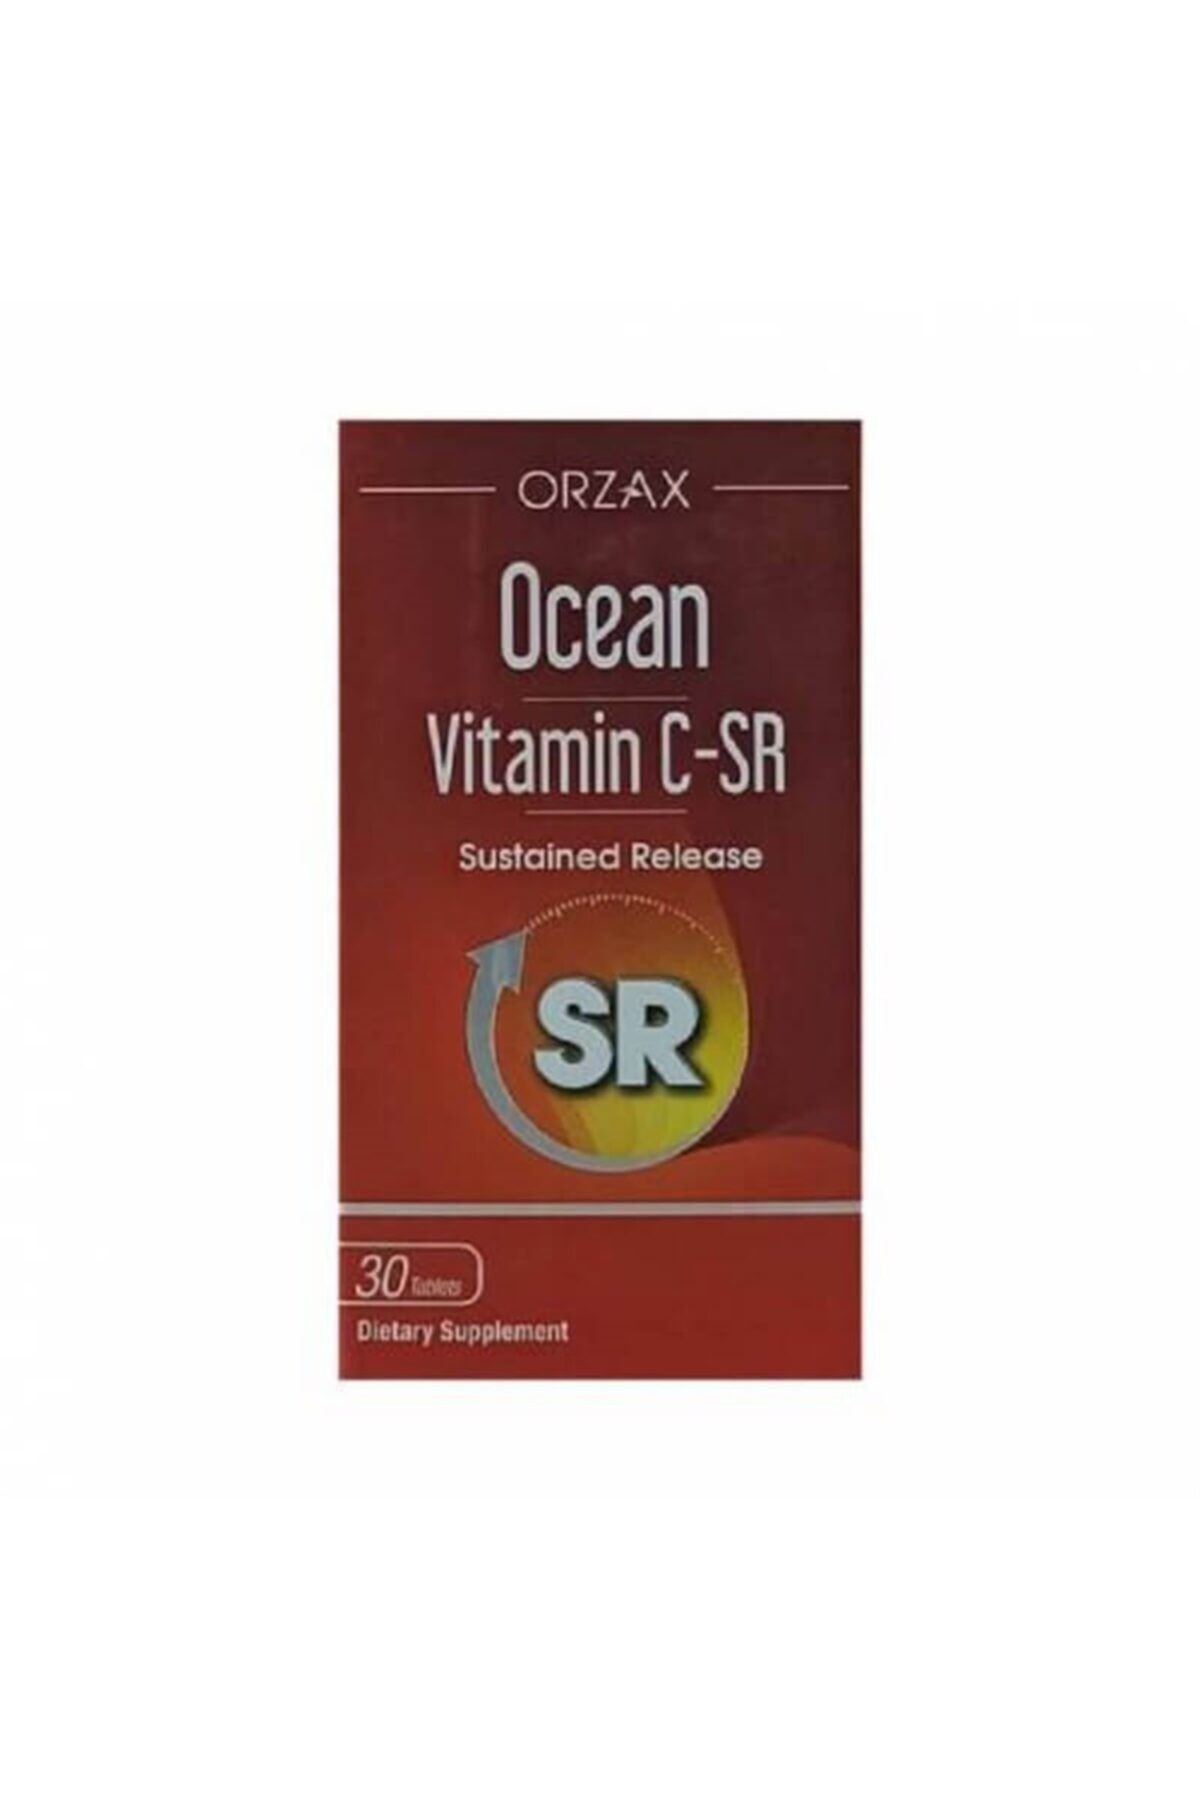 Ocean Vitamin C-sr 30 Tablet